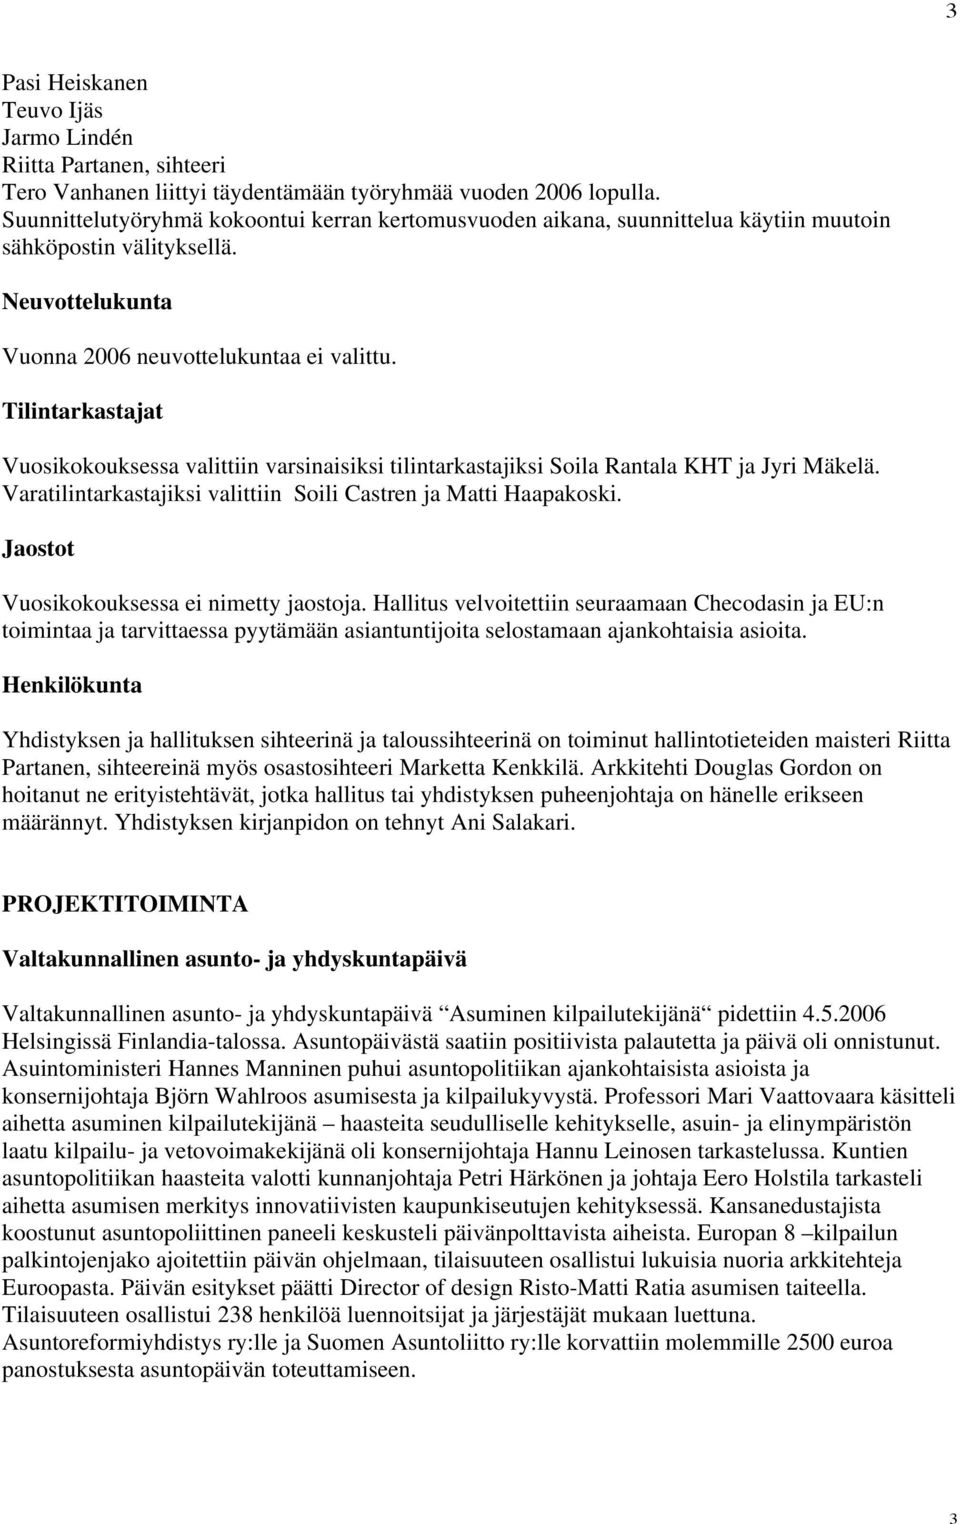 Tilintarkastajat Vuosikokouksessa valittiin varsinaisiksi tilintarkastajiksi Soila Rantala KHT ja Jyri Mäkelä. Varatilintarkastajiksi valittiin Soili Castren ja Matti Haapakoski.